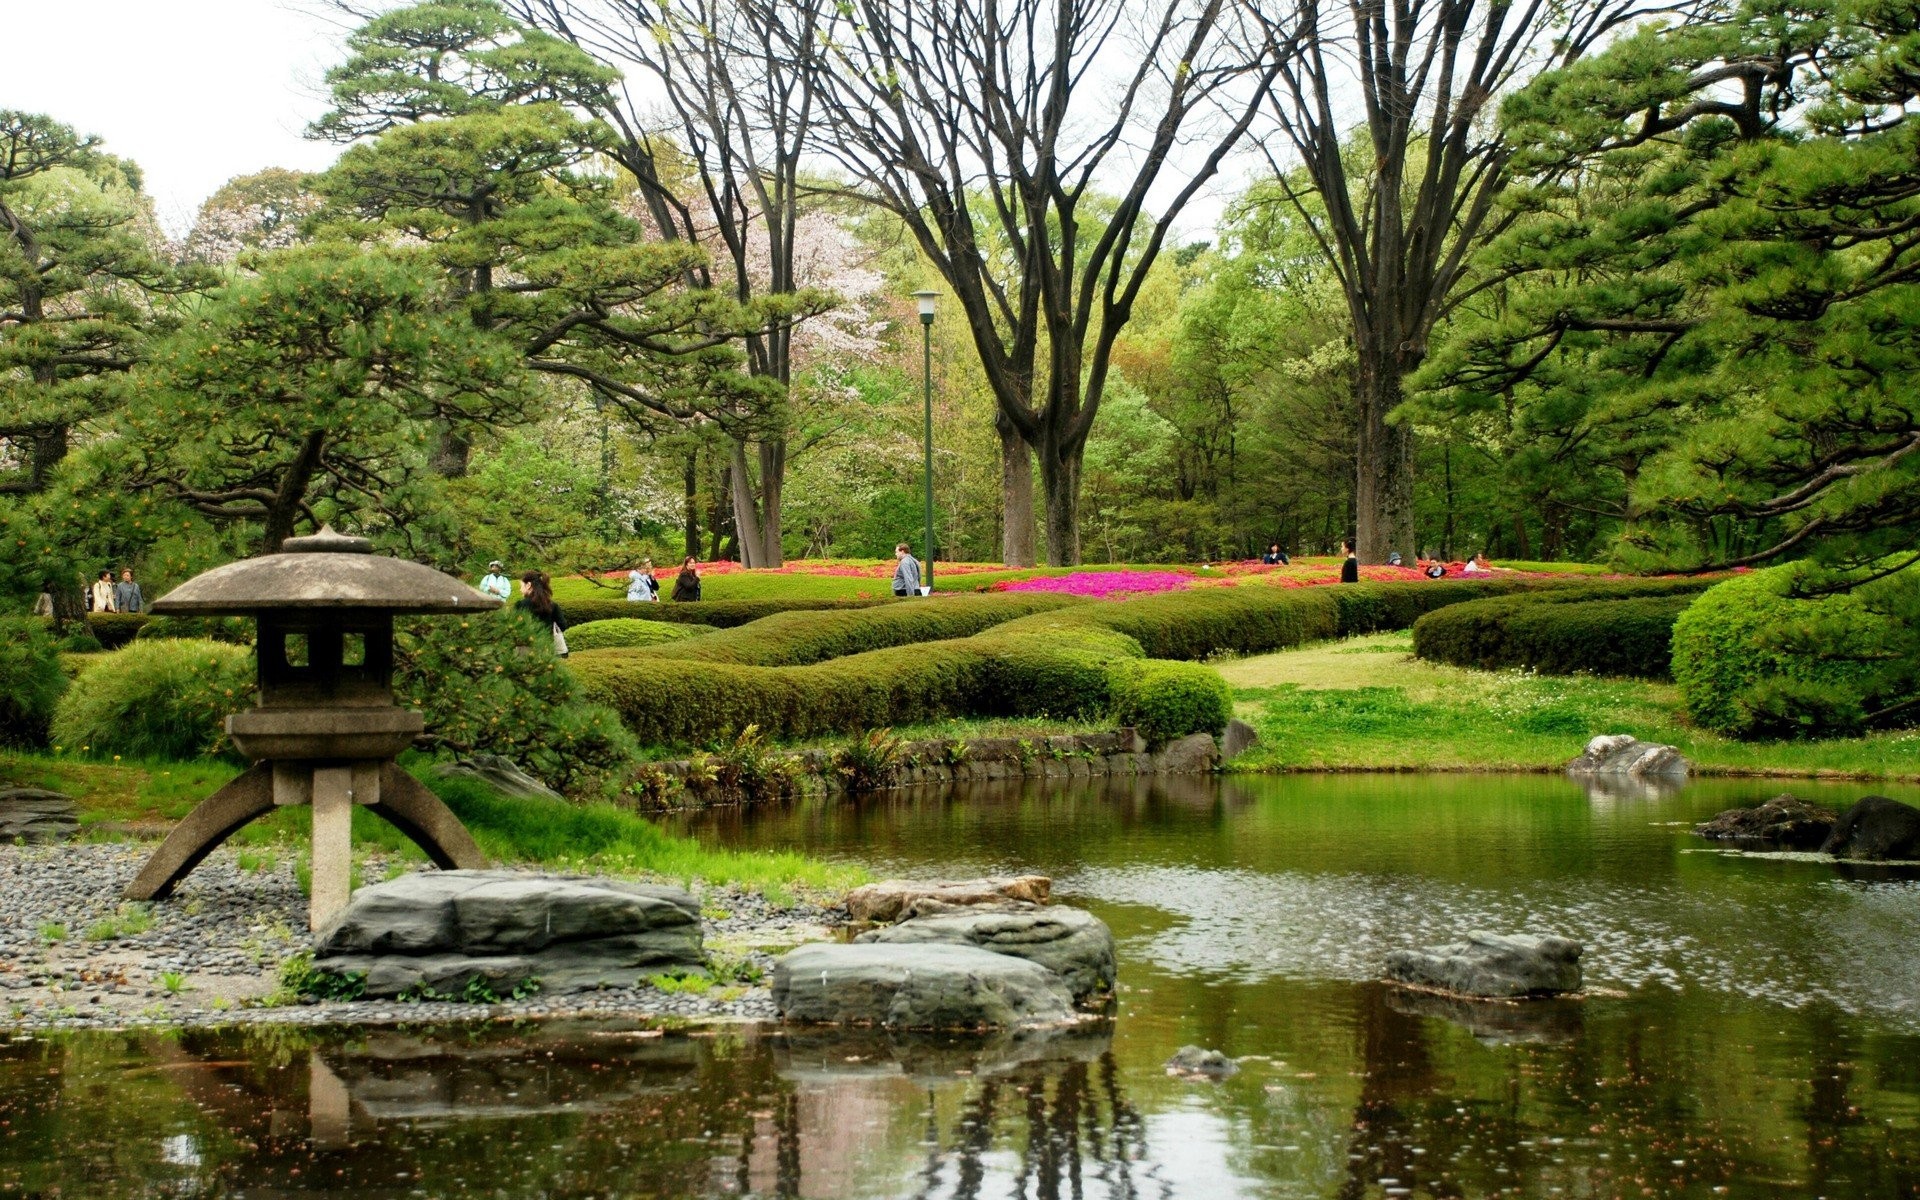 日本の自然の壁紙,自然の風景,自然,庭園,植物園,池